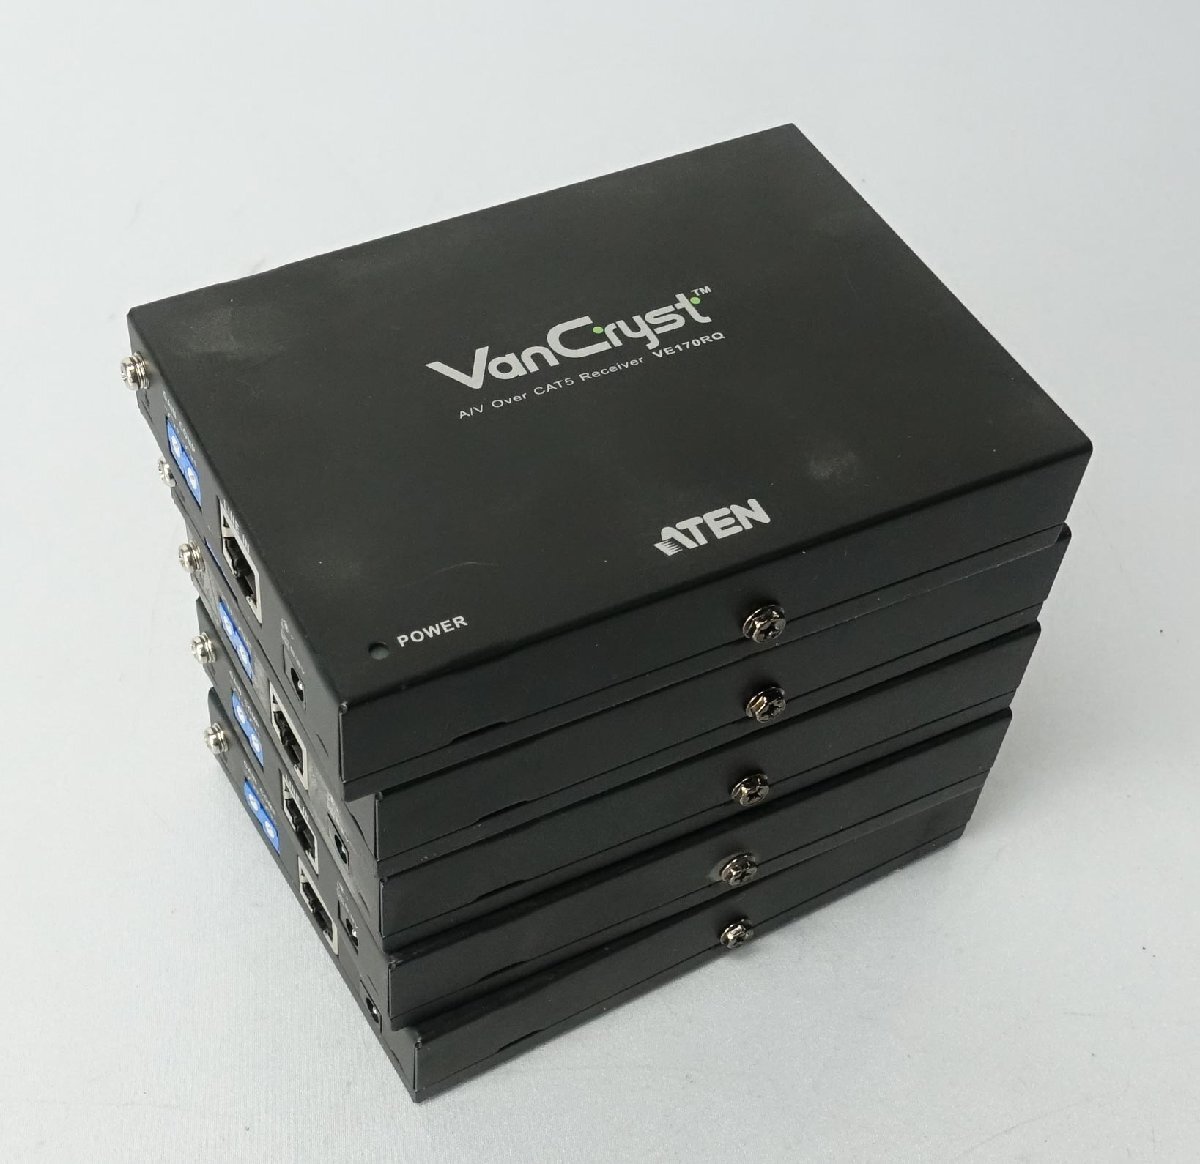 8 pcs set electrification verification only ATEN VGA 4 minute delivery confidence vessel VS1204Tx3 pcs receiver VE170RQx5 pcs video image equipment N032106